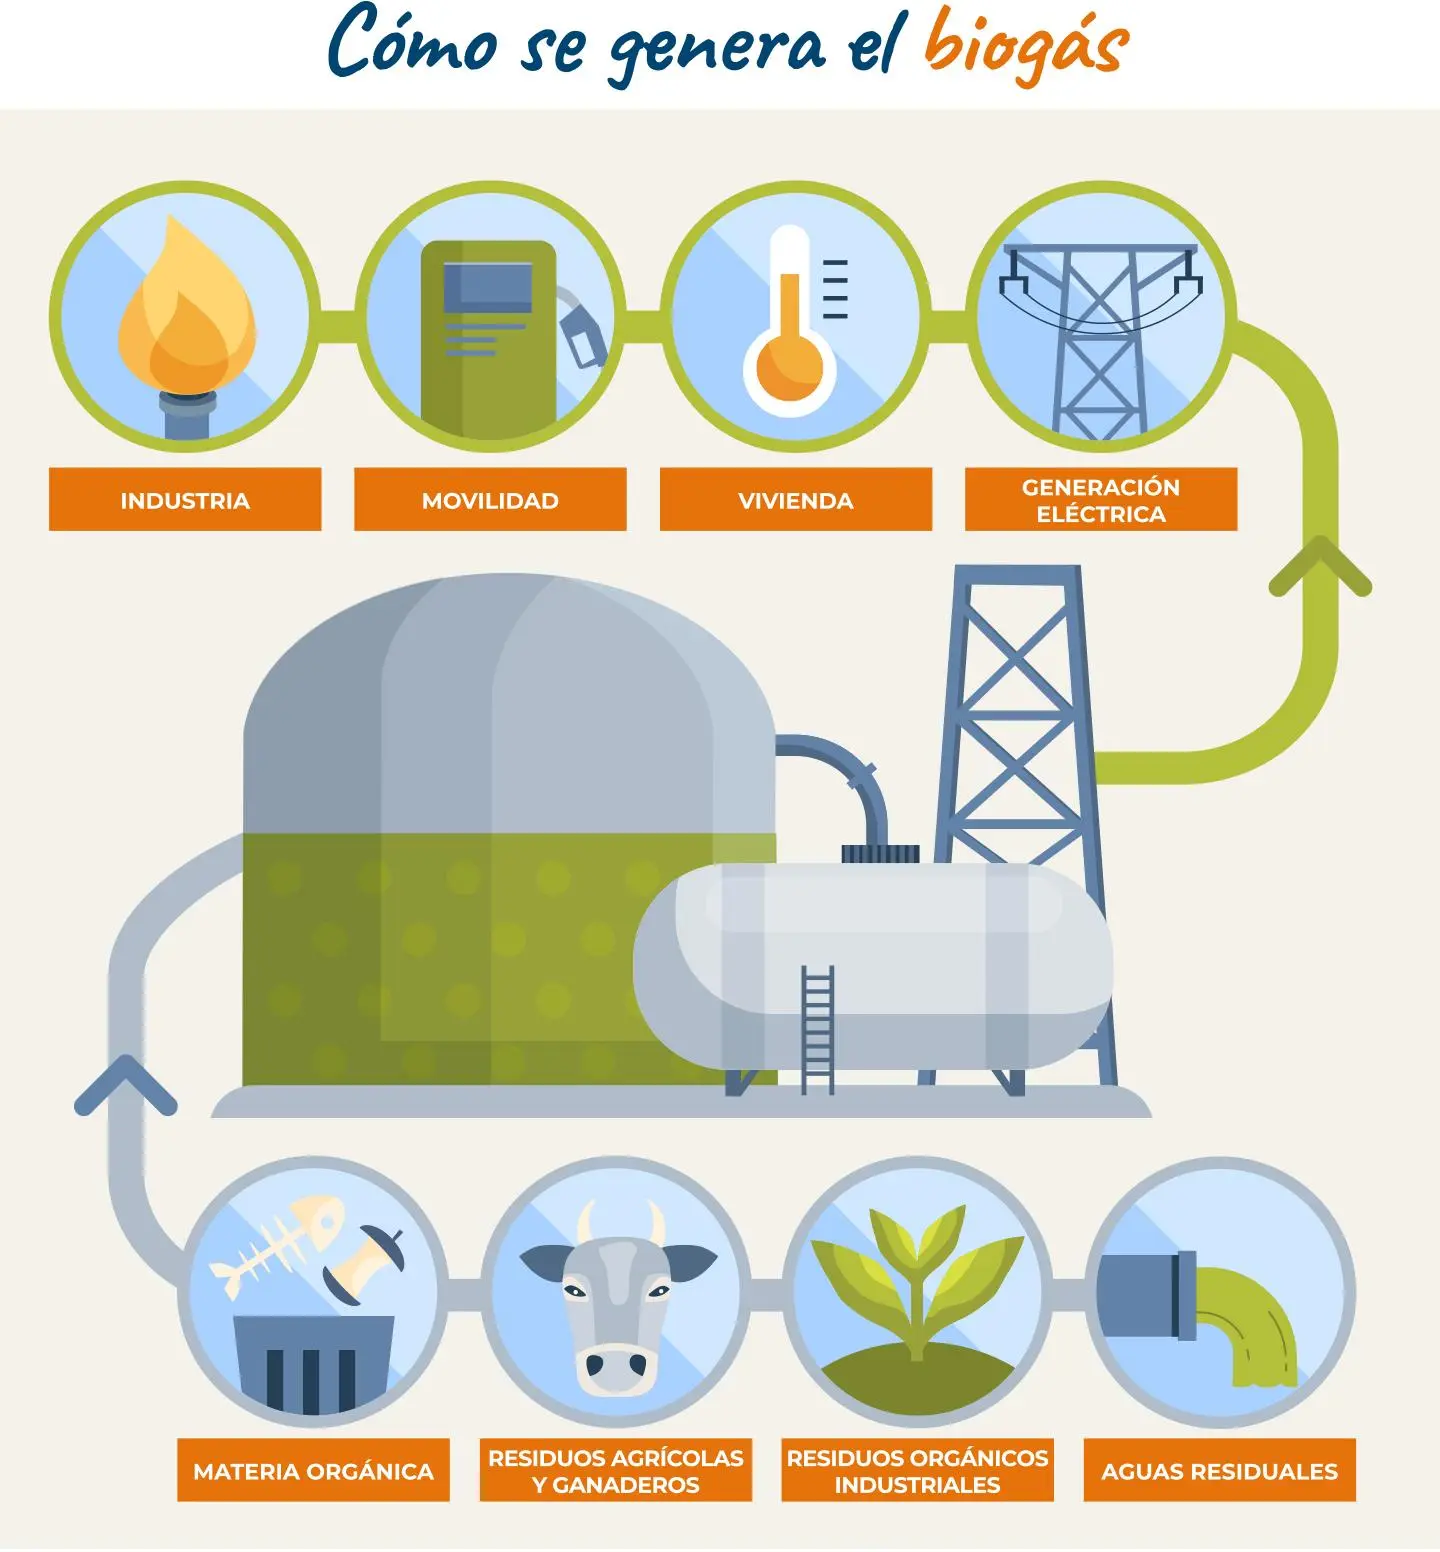 extraer energía de residuos renovables - Qué residuos generan energía